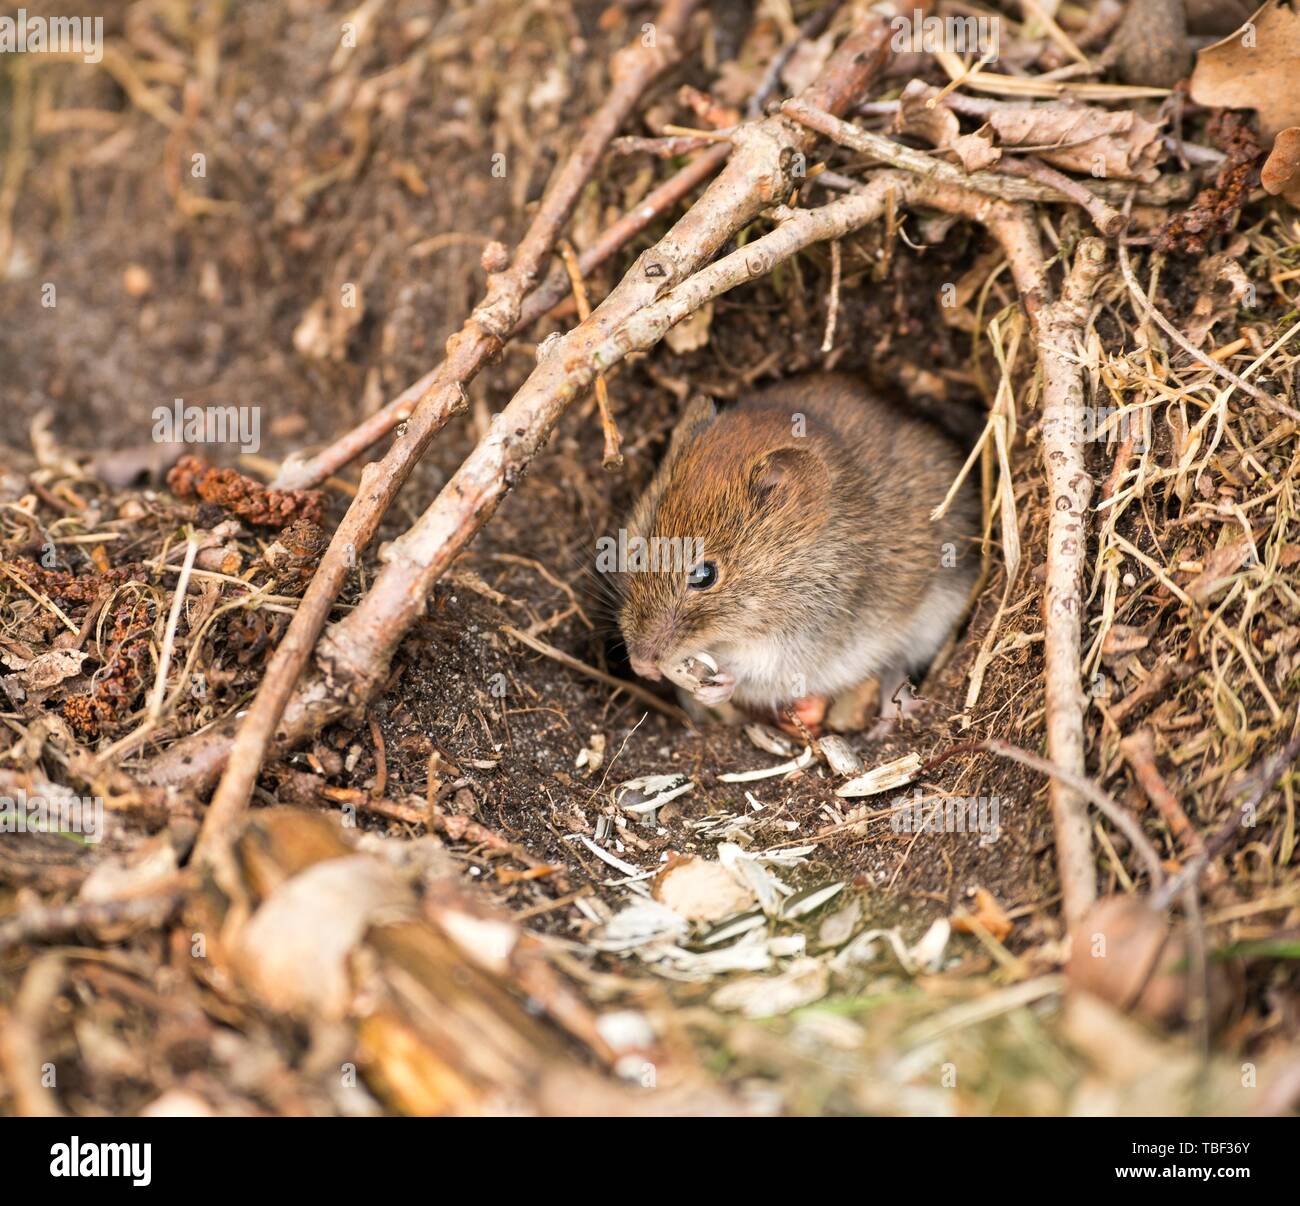 Campagnol roussâtre (Clethrionomys glareolus) est situé en face de trou de souris et grignote sur les graines de tournesol, Luneburger Heide, Basse-Saxe, Allemagne Banque D'Images